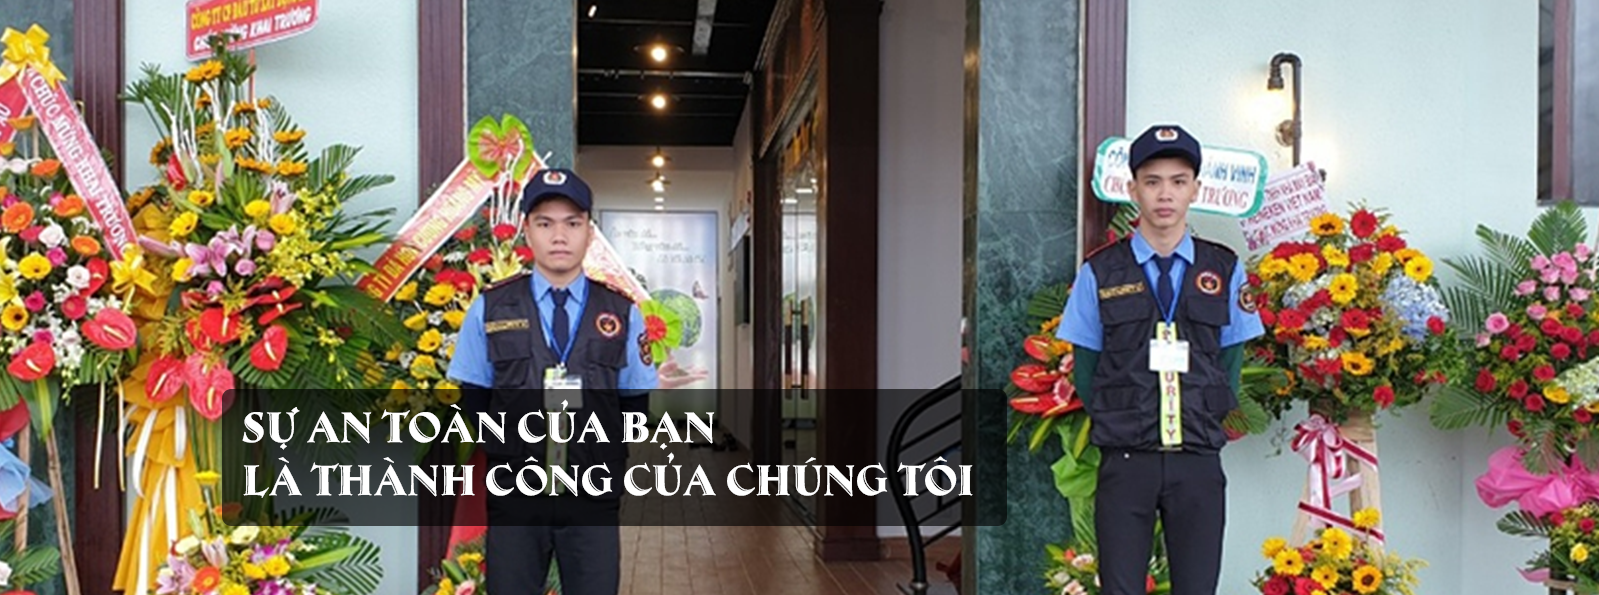 Nhiệm vụ người bảo vệ các mục tiêu cố định tại Đà Nẵng